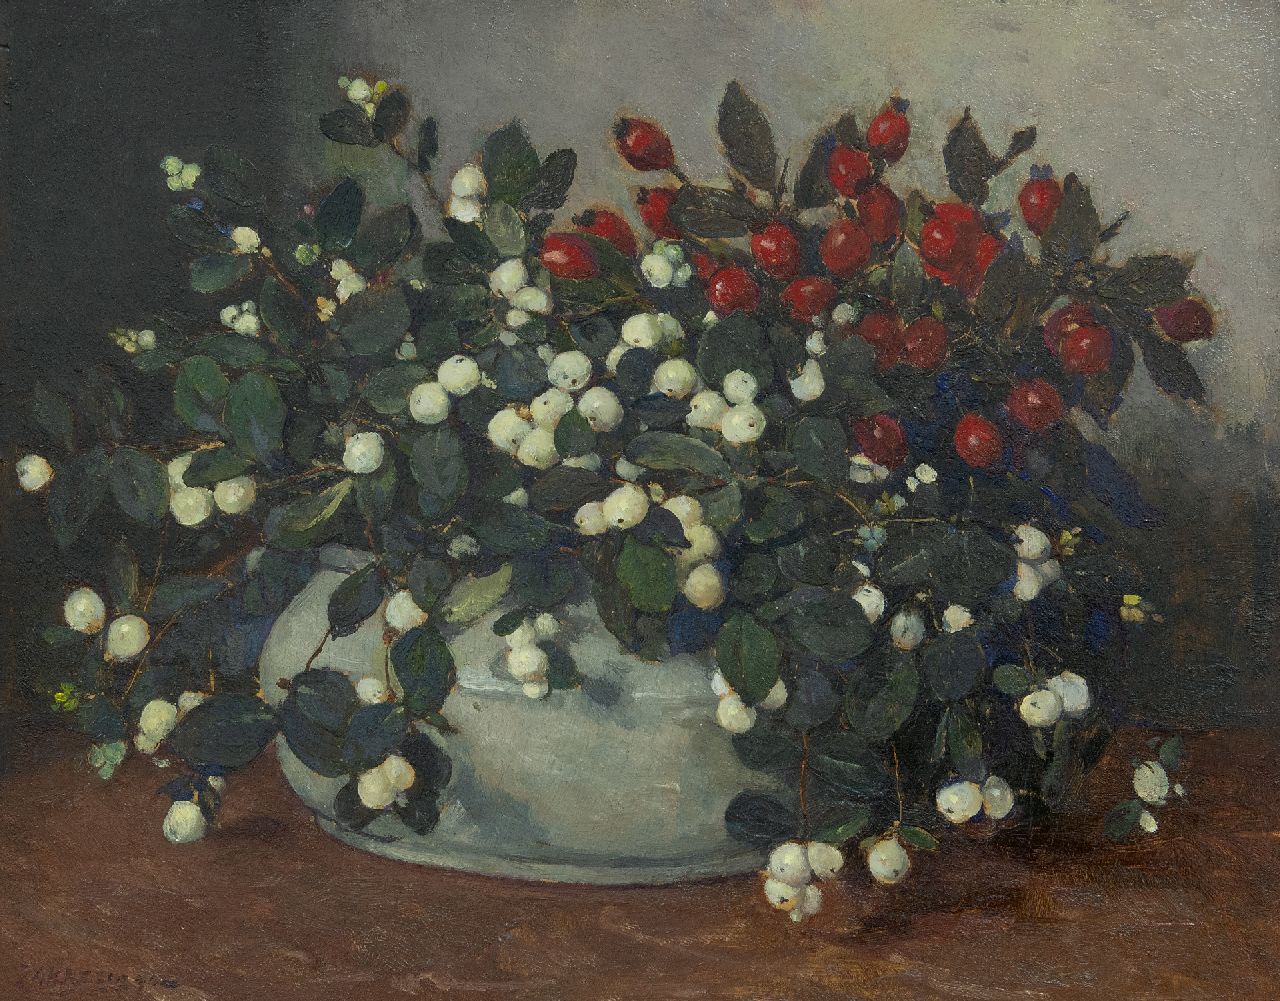 Akkeringa J.E.H.  | 'Johannes Evert' Hendrik Akkeringa, Snowberries and rosehips in a cream vase, oil on panel 34.0 x 42.1 cm, signed l.l.